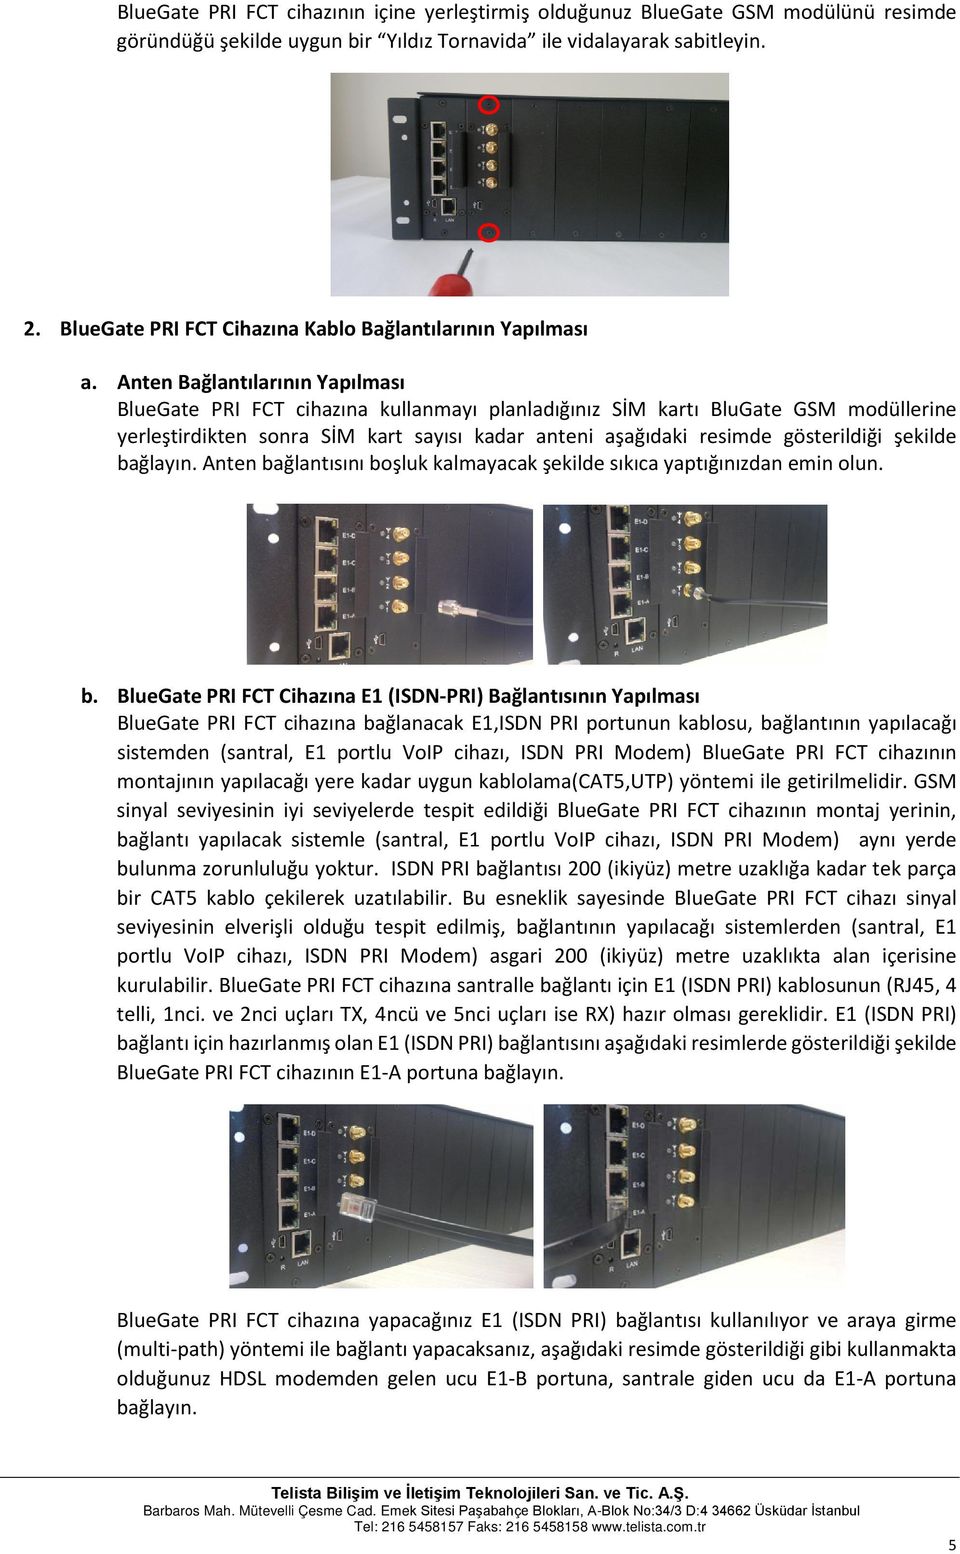 Anten Bağlantılarının Yapılması BlueGate PRI FCT cihazına kullanmayı planladığınız SİM kartı BluGate GSM modüllerine yerleştirdikten sonra SİM kart sayısı kadar anteni aşağıdaki resimde gösterildiği